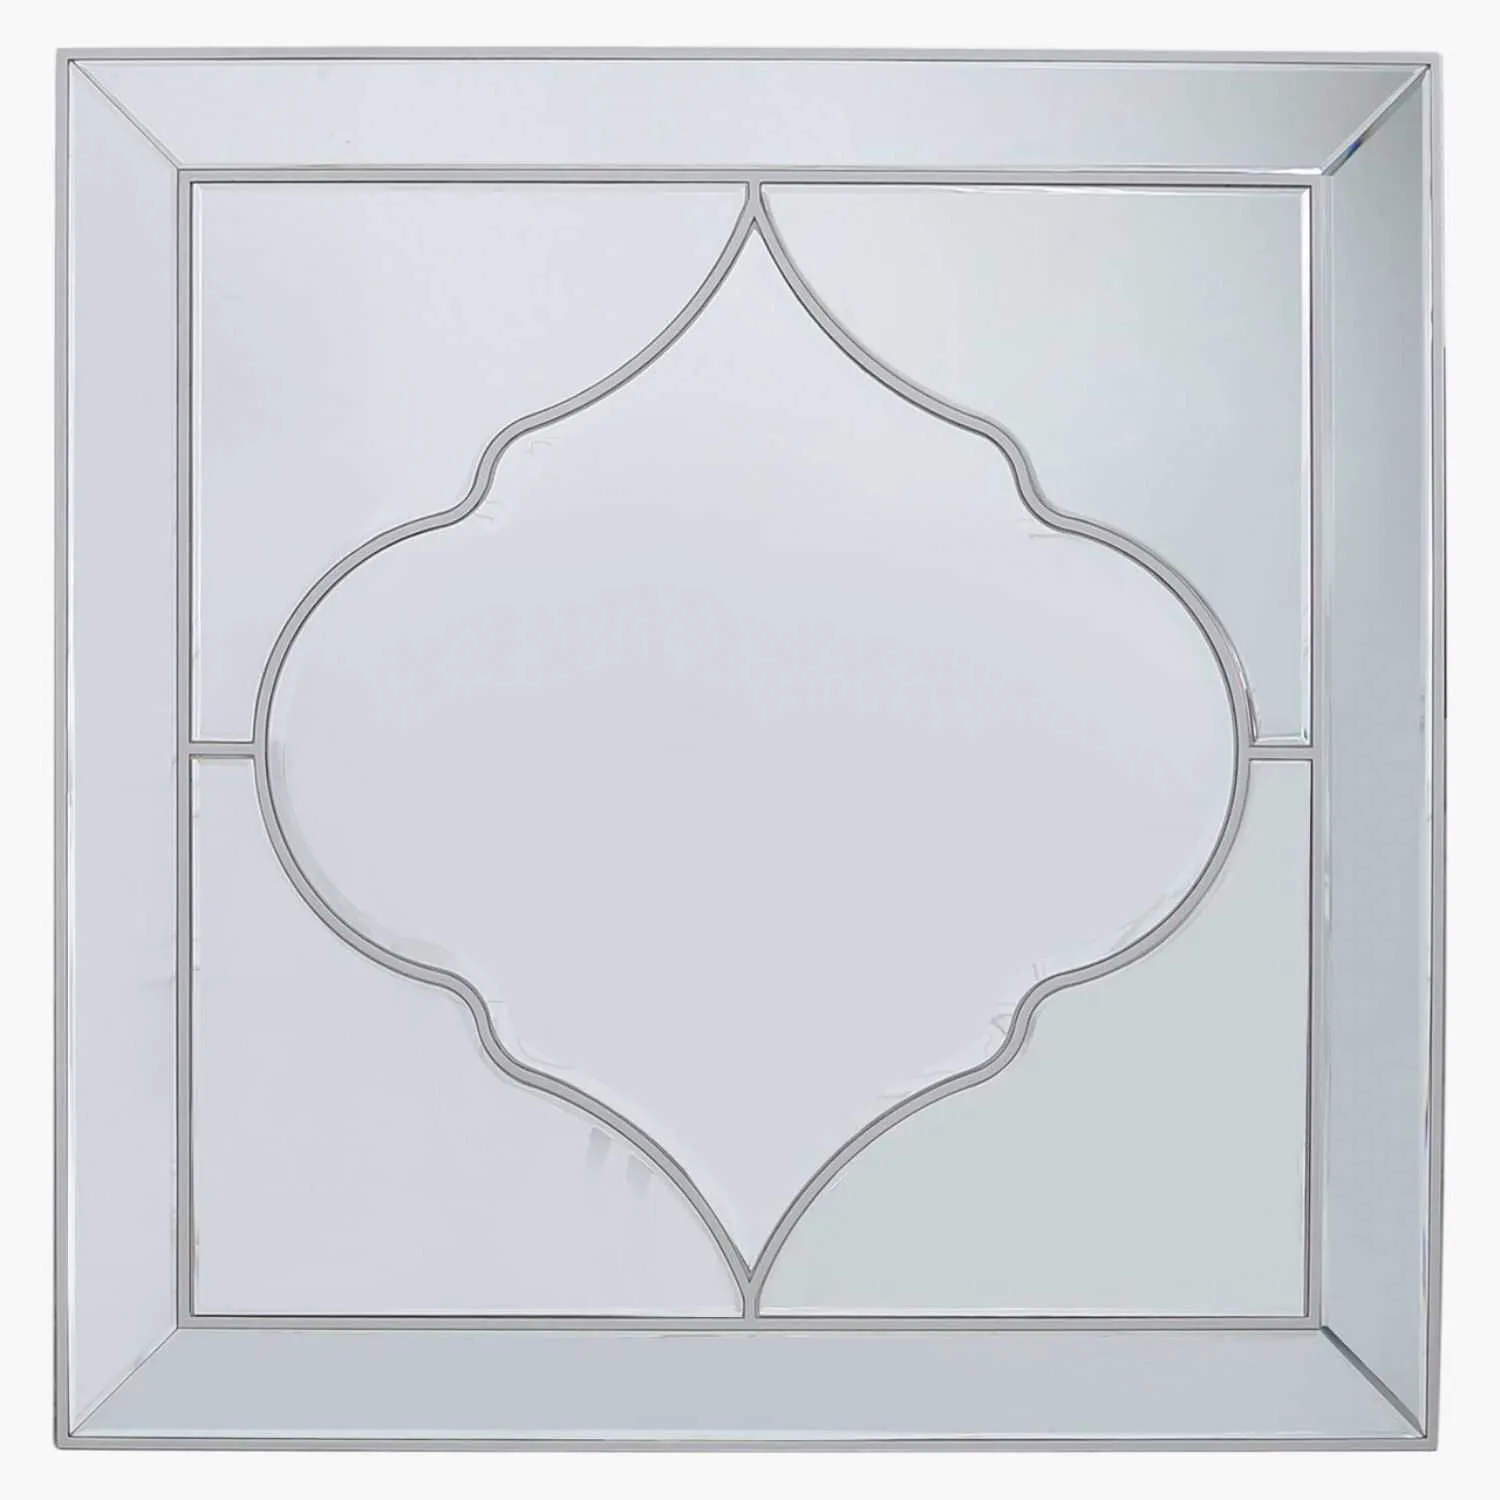 Morocco Square Wall Mirror Silver 100cm